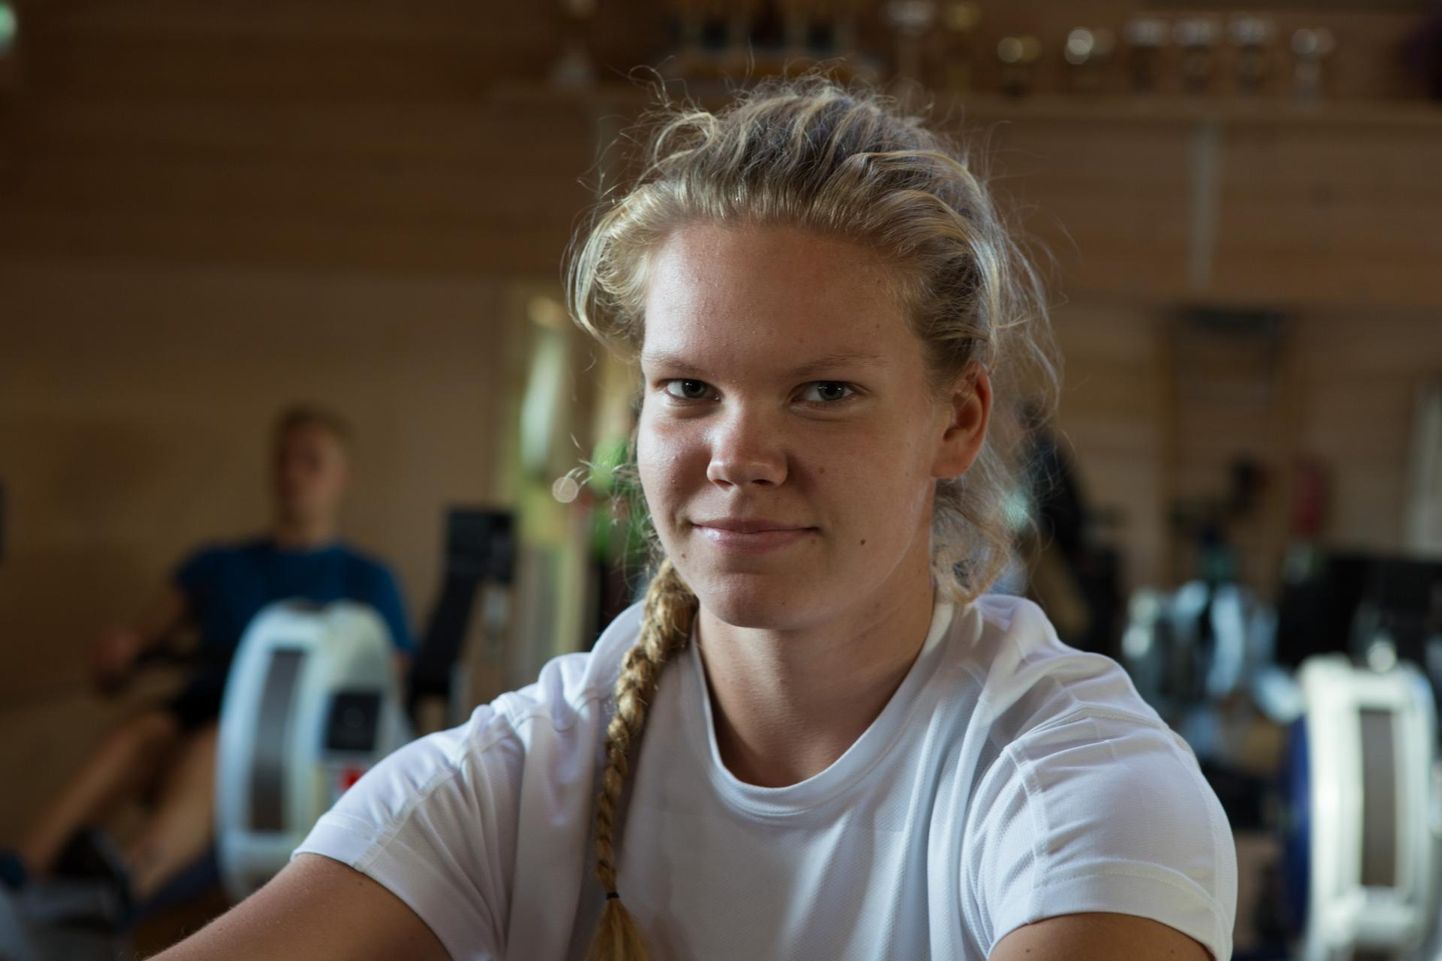 Alla 23-aastaste naiste võistlusklassis võttis viljandlanna Kärolyn Mäesaar (pildil) võidu paarisaeruliste kahepaatide konkurentsis koos Krete Koovitiga. Samuti tõi ta kuldmedali naiste ühepaadil.